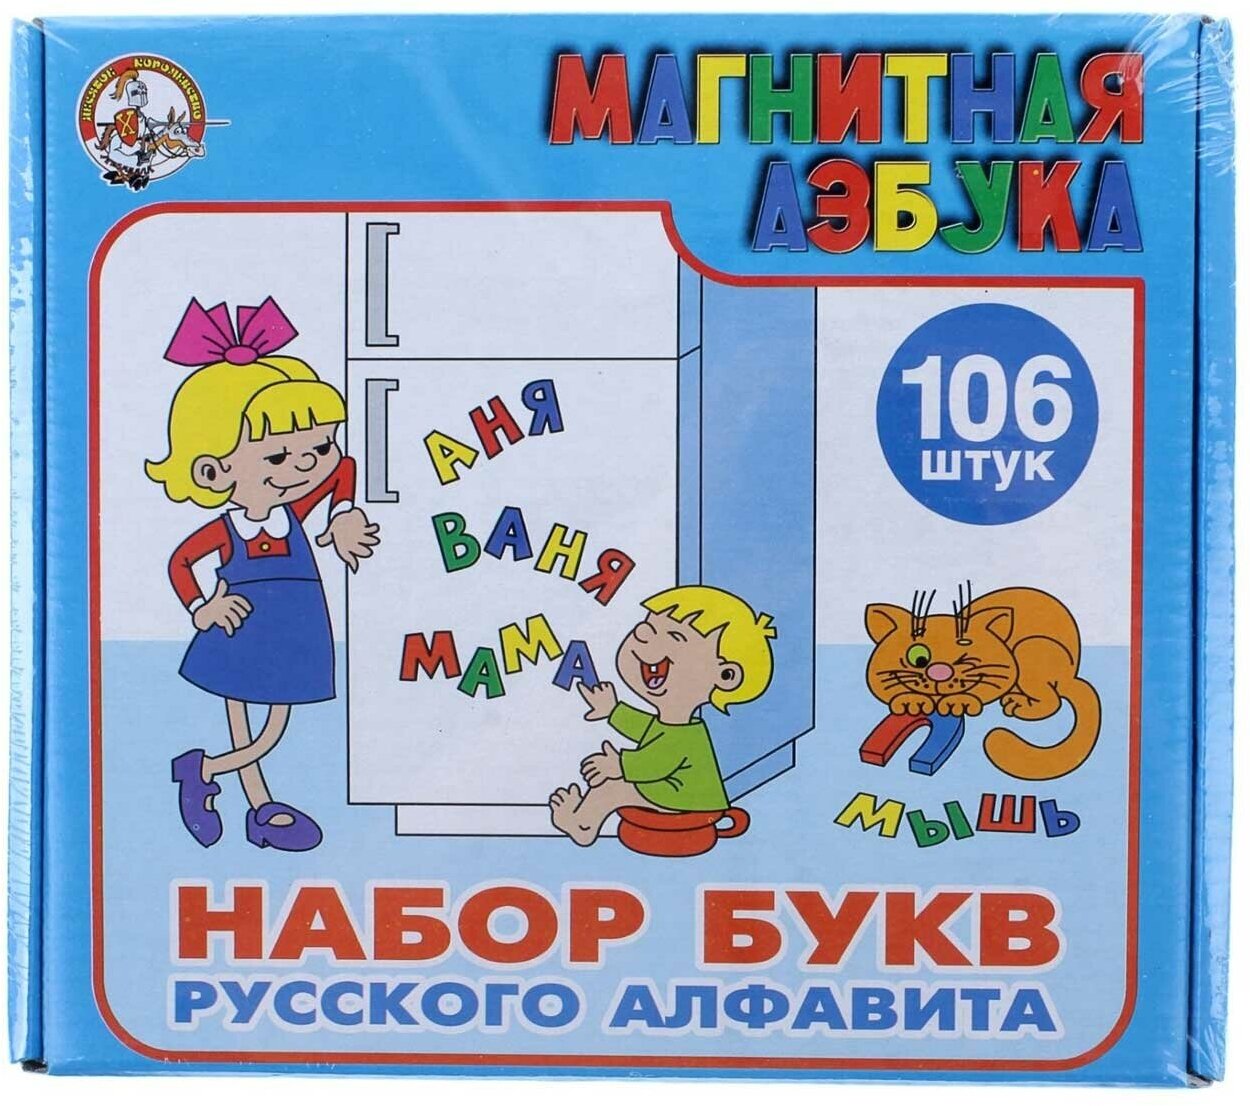 Обучающая игра Десятое Королевство "Магнитная азбука: набор букв русского алфавита", 106 букв высотой 35 мм (845)